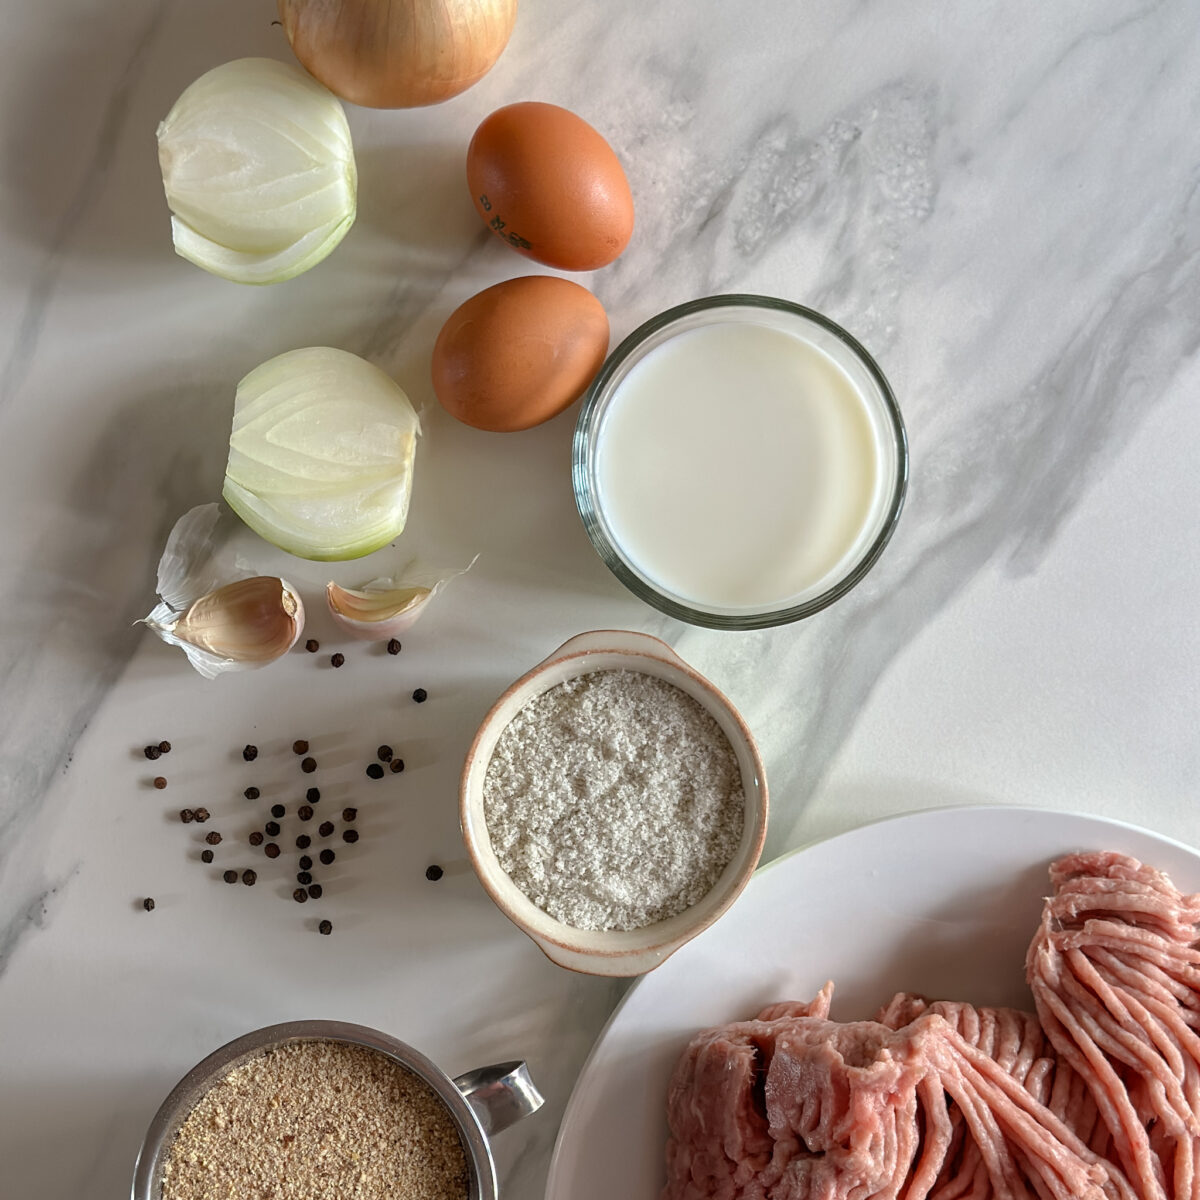 Ingrédients pour boulette suédoise: oignon, oeuf, lait, chapelure, poivre, sel